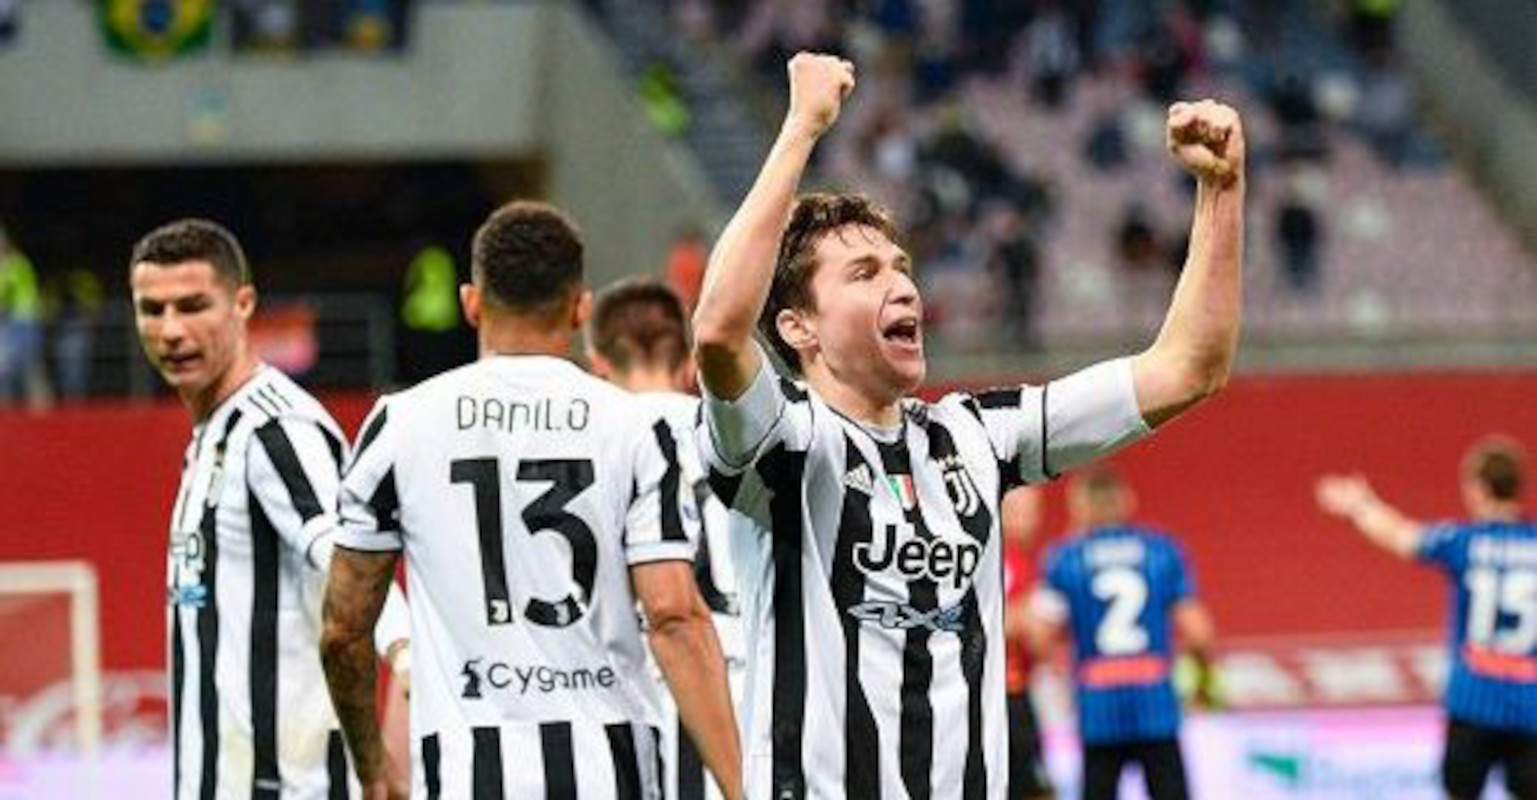 Coppa Italia 2021 / Juventus, Coppa Italia 2021: premiazione e